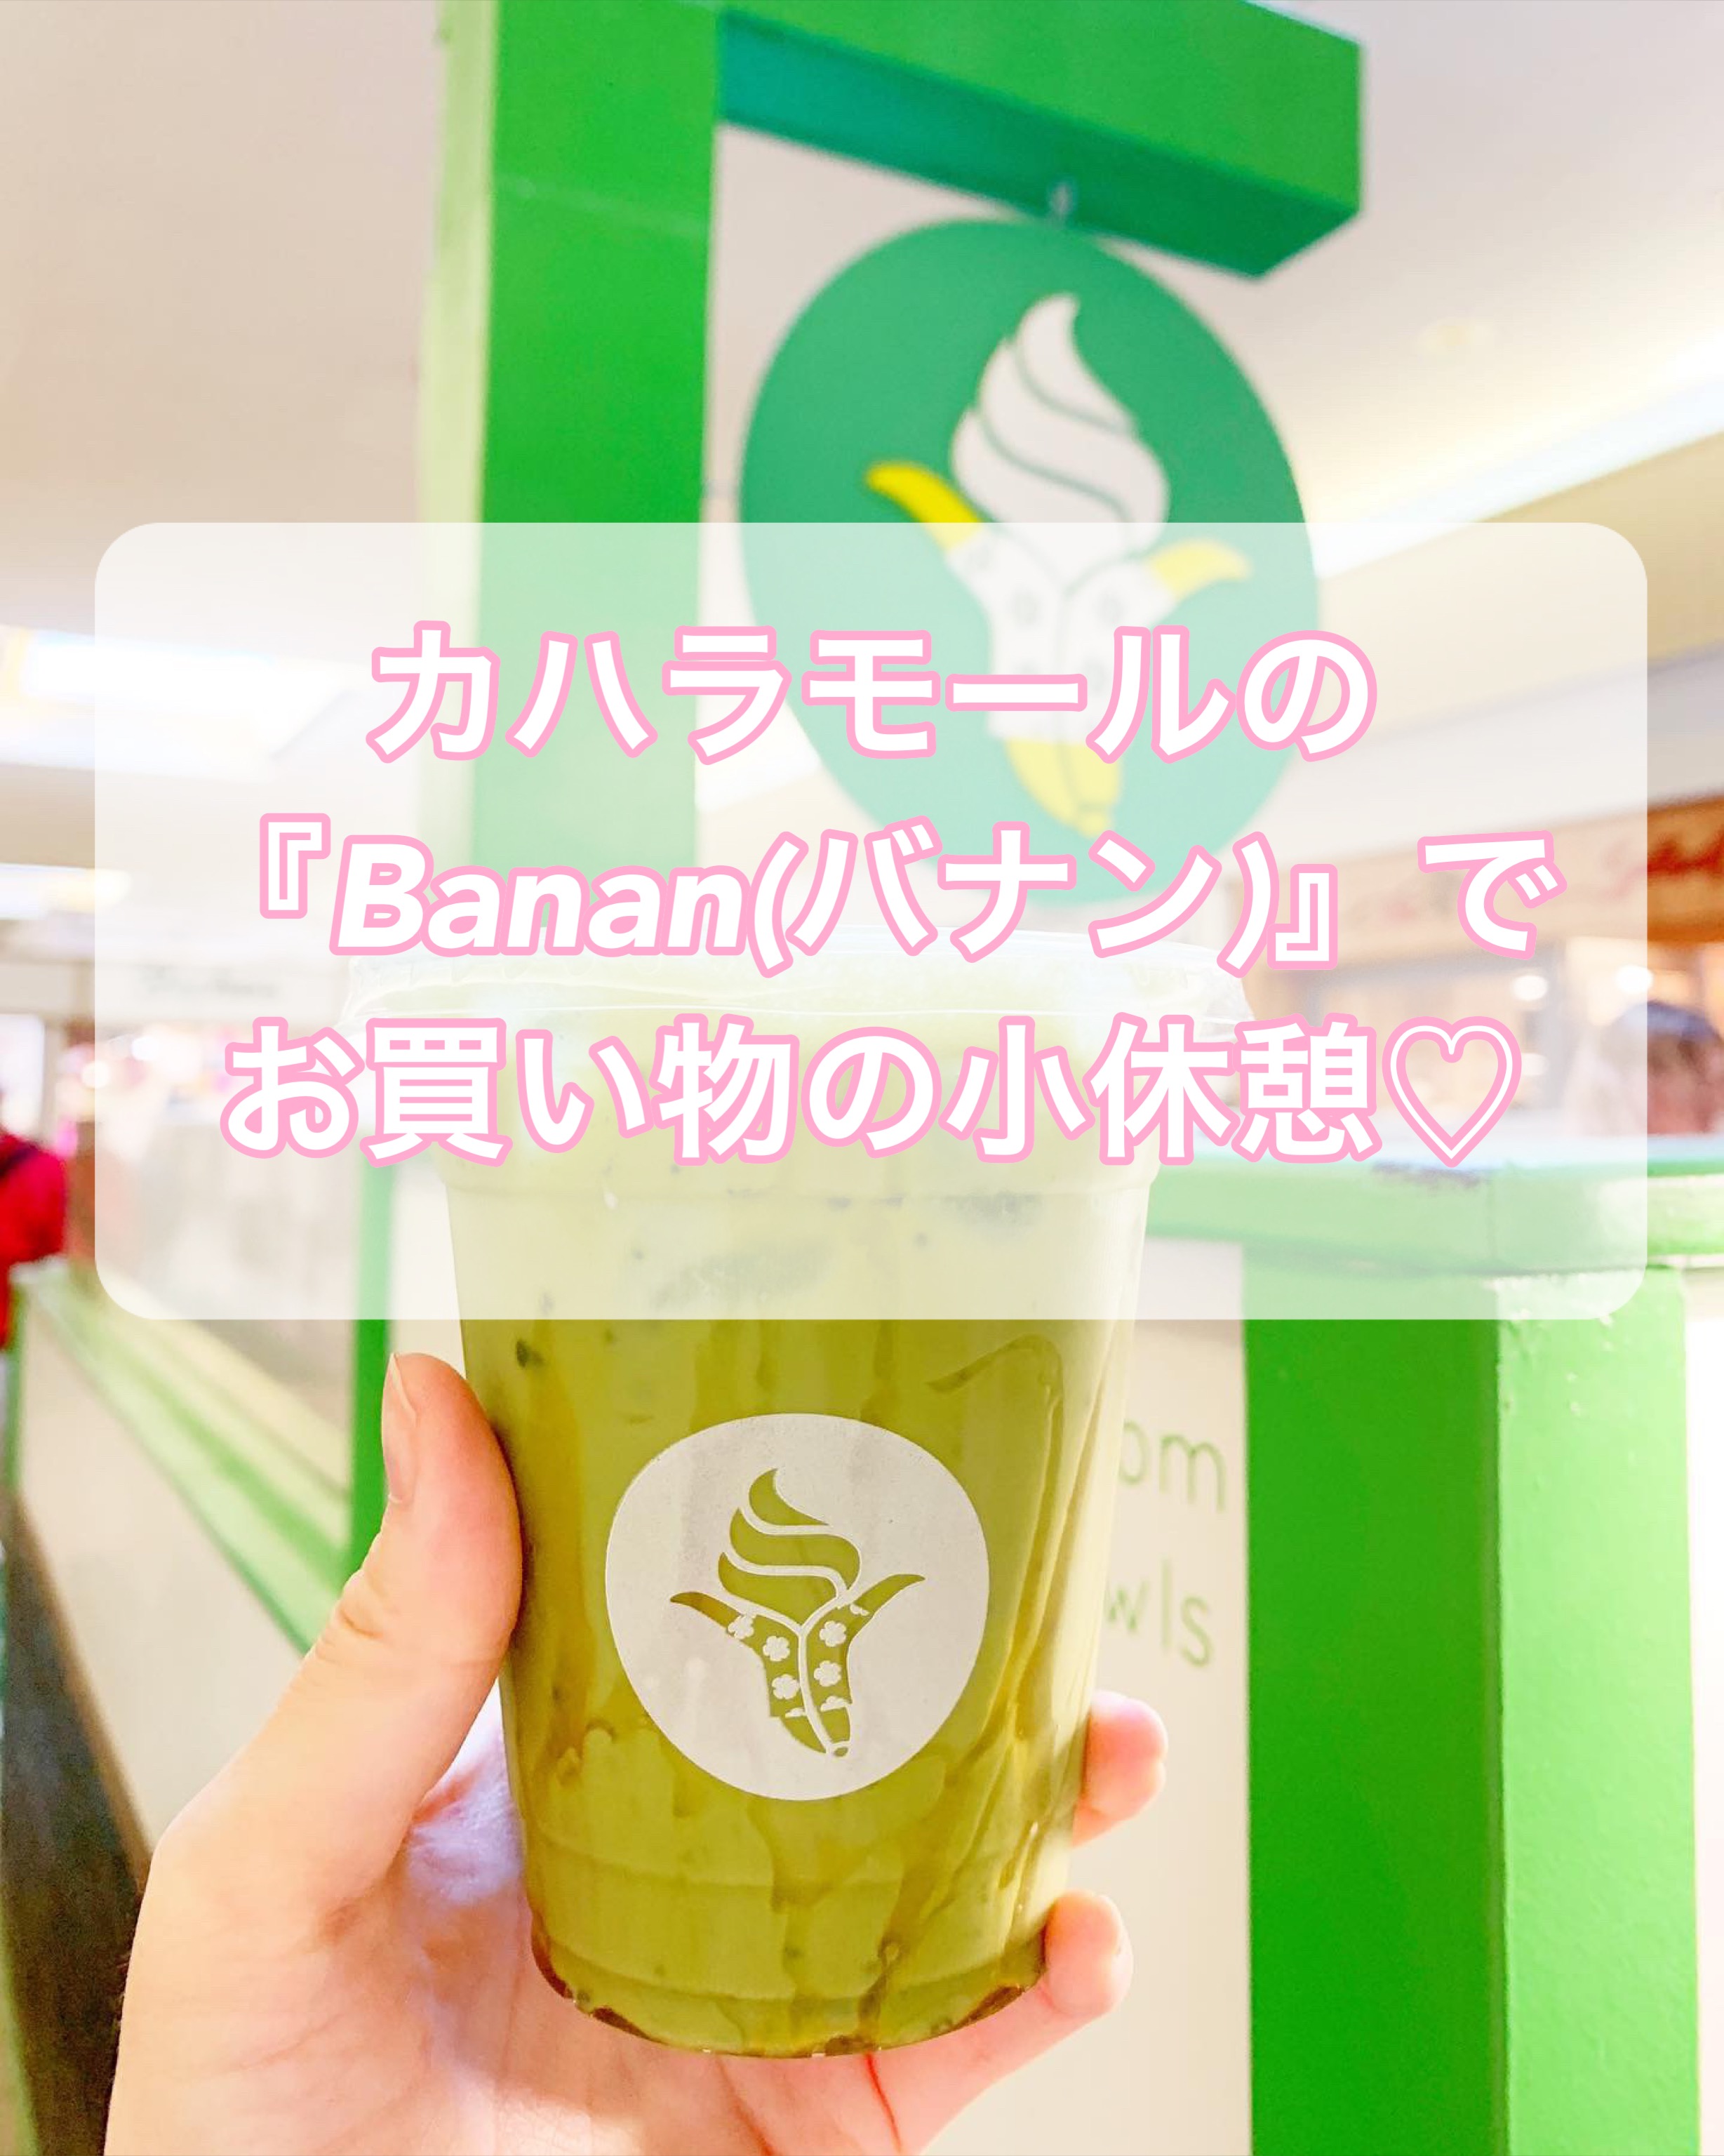 【ハワイカフェ】カハラモールに「Banan(バナン)」ソフトクリーム(アイス)が美味しい【場所】